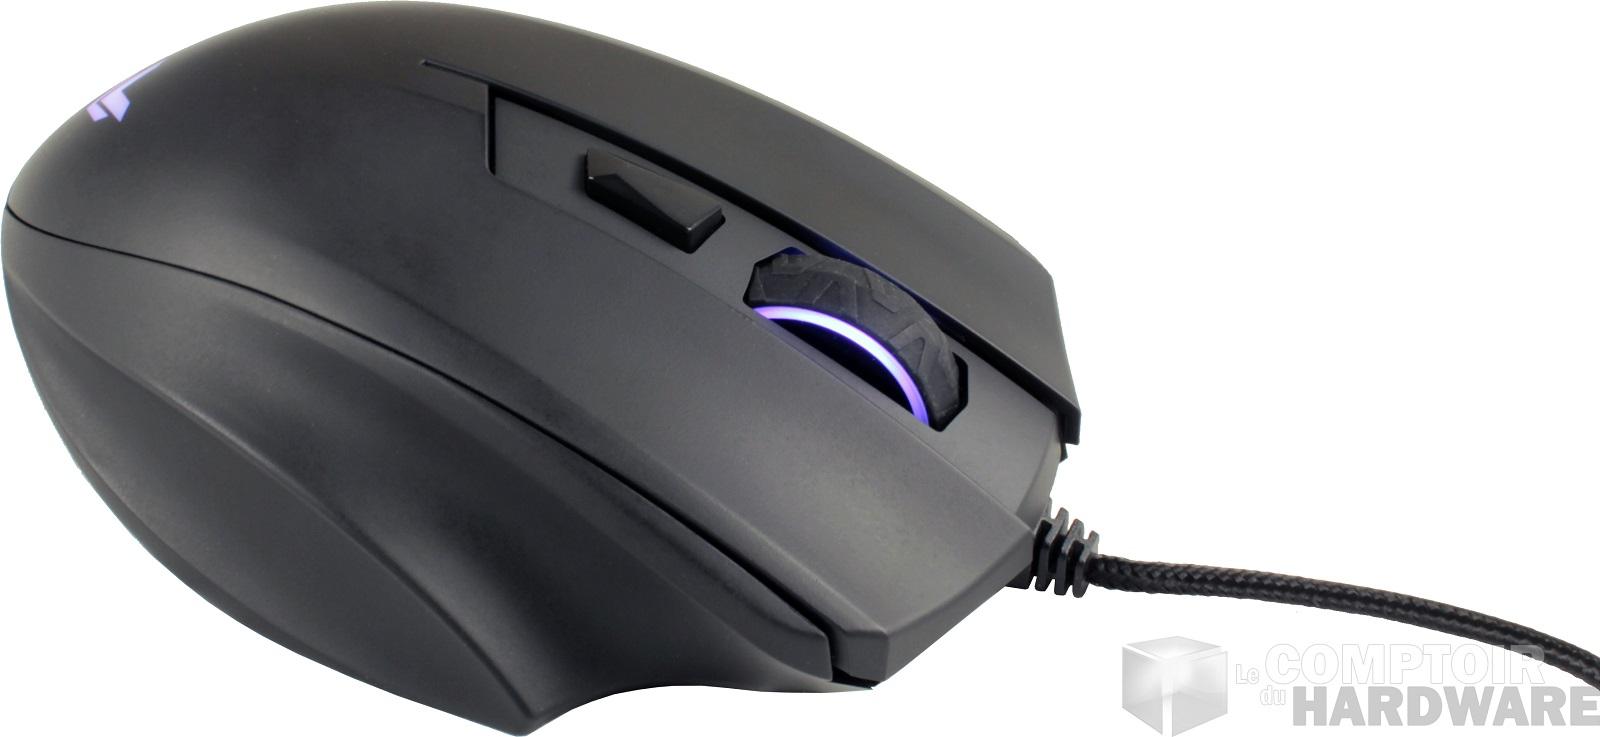 Nous avons essayé • Un clavier et une souris gaming  Basics - Le  comptoir du hardware